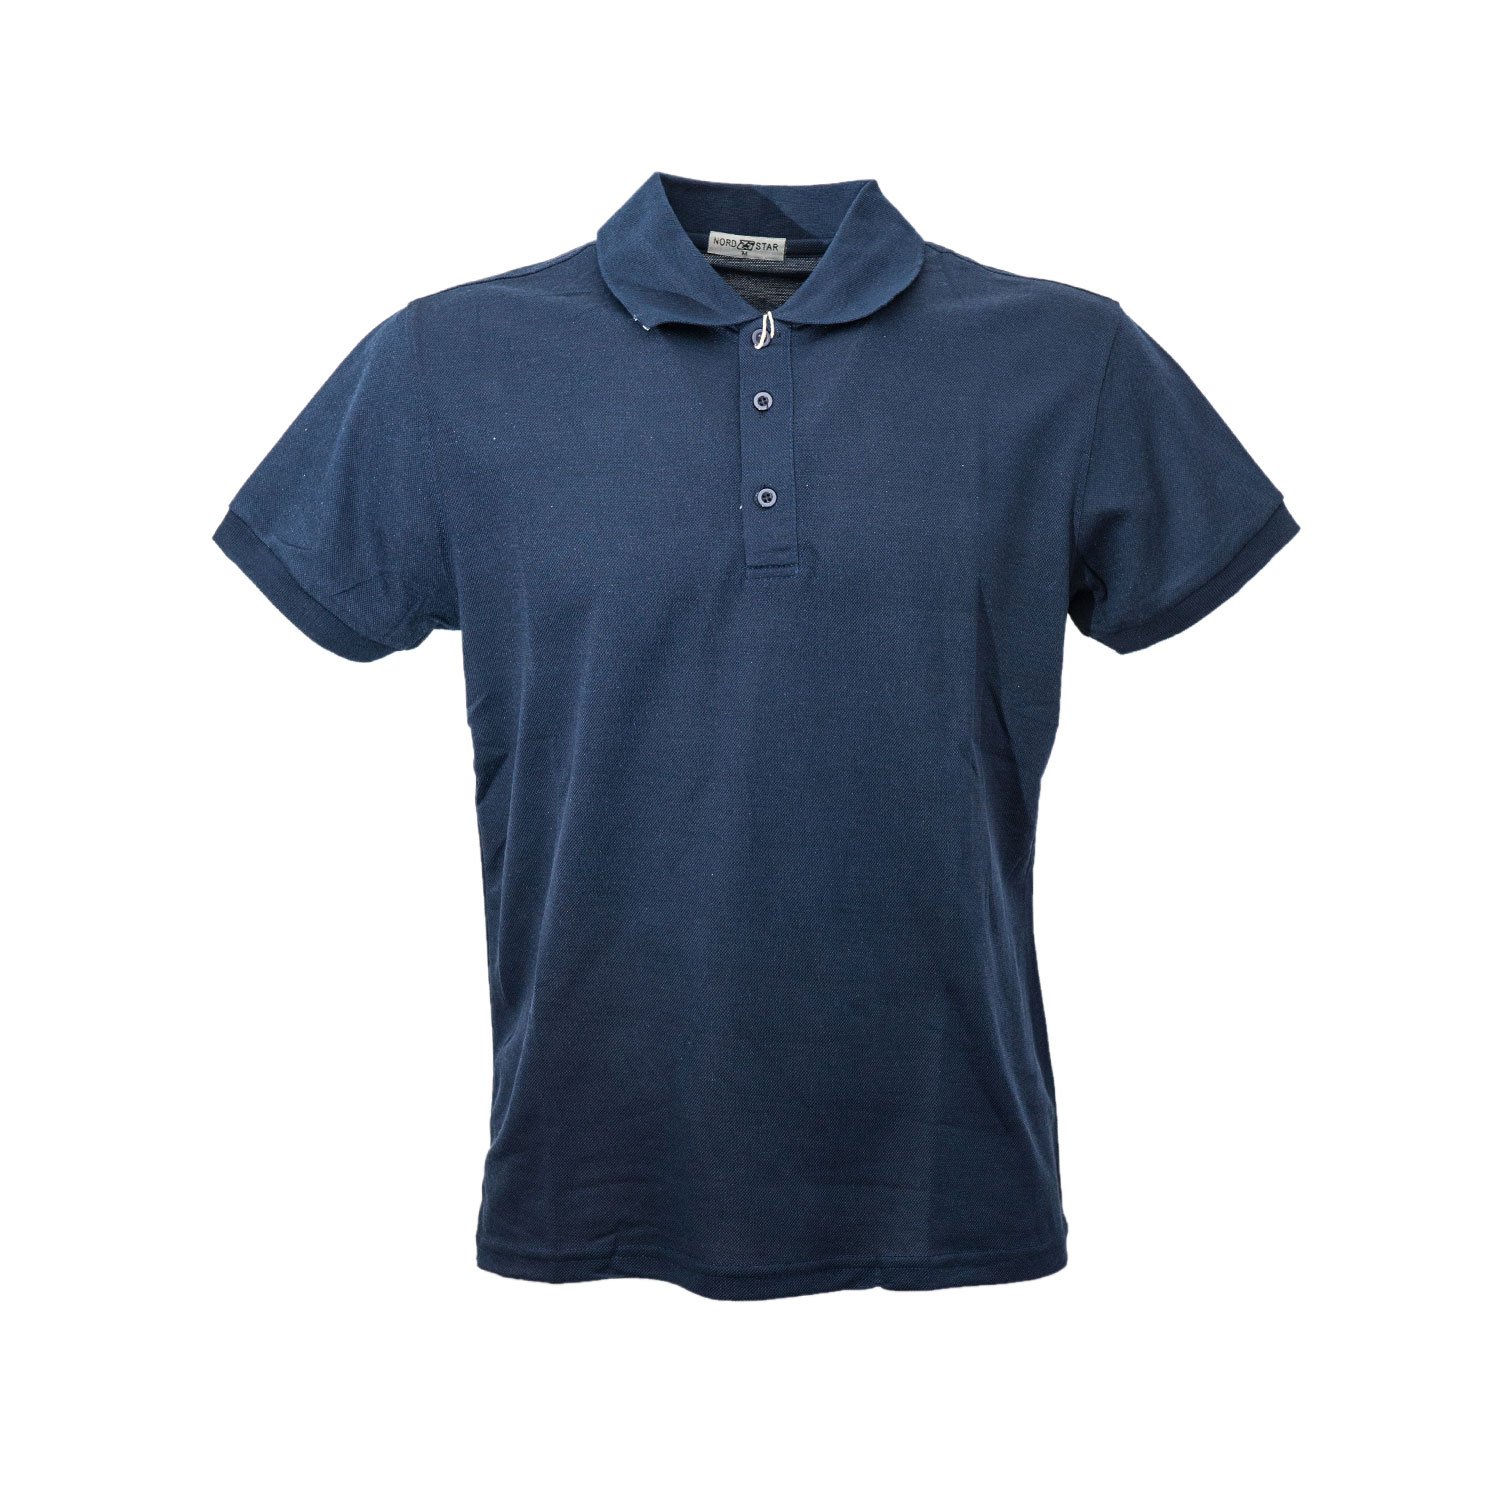 Polo Manica Corta Uomo Maglia Blu Maglietta Sport Casual Cotone T-shirt  Slim Fit | eBay